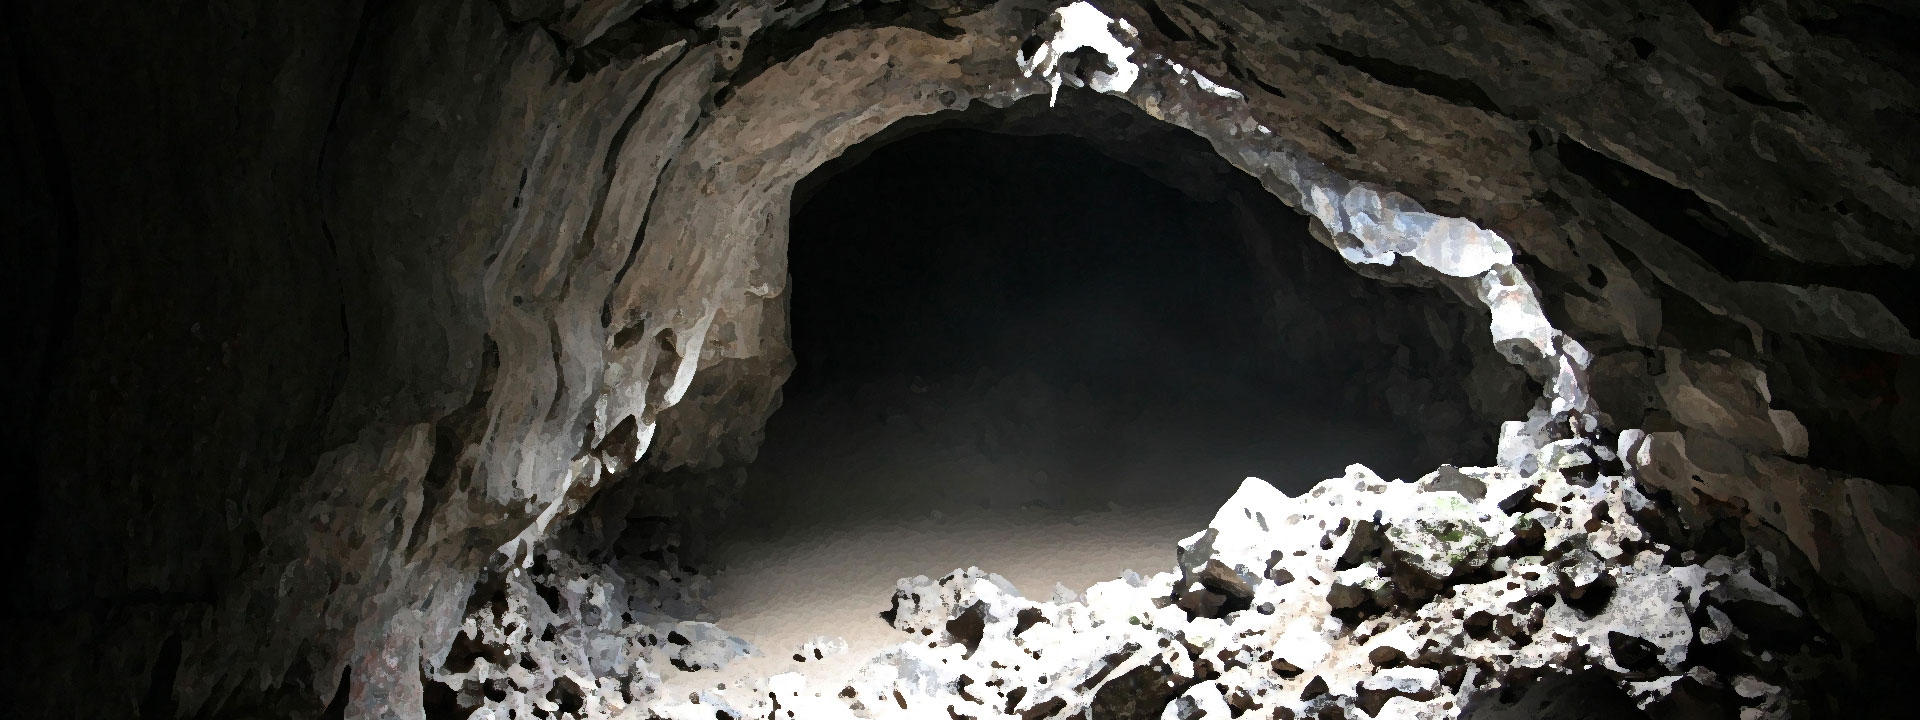 Imagem do podcast TESTE 7 do RPG Next - entrada sombria de uma caverna